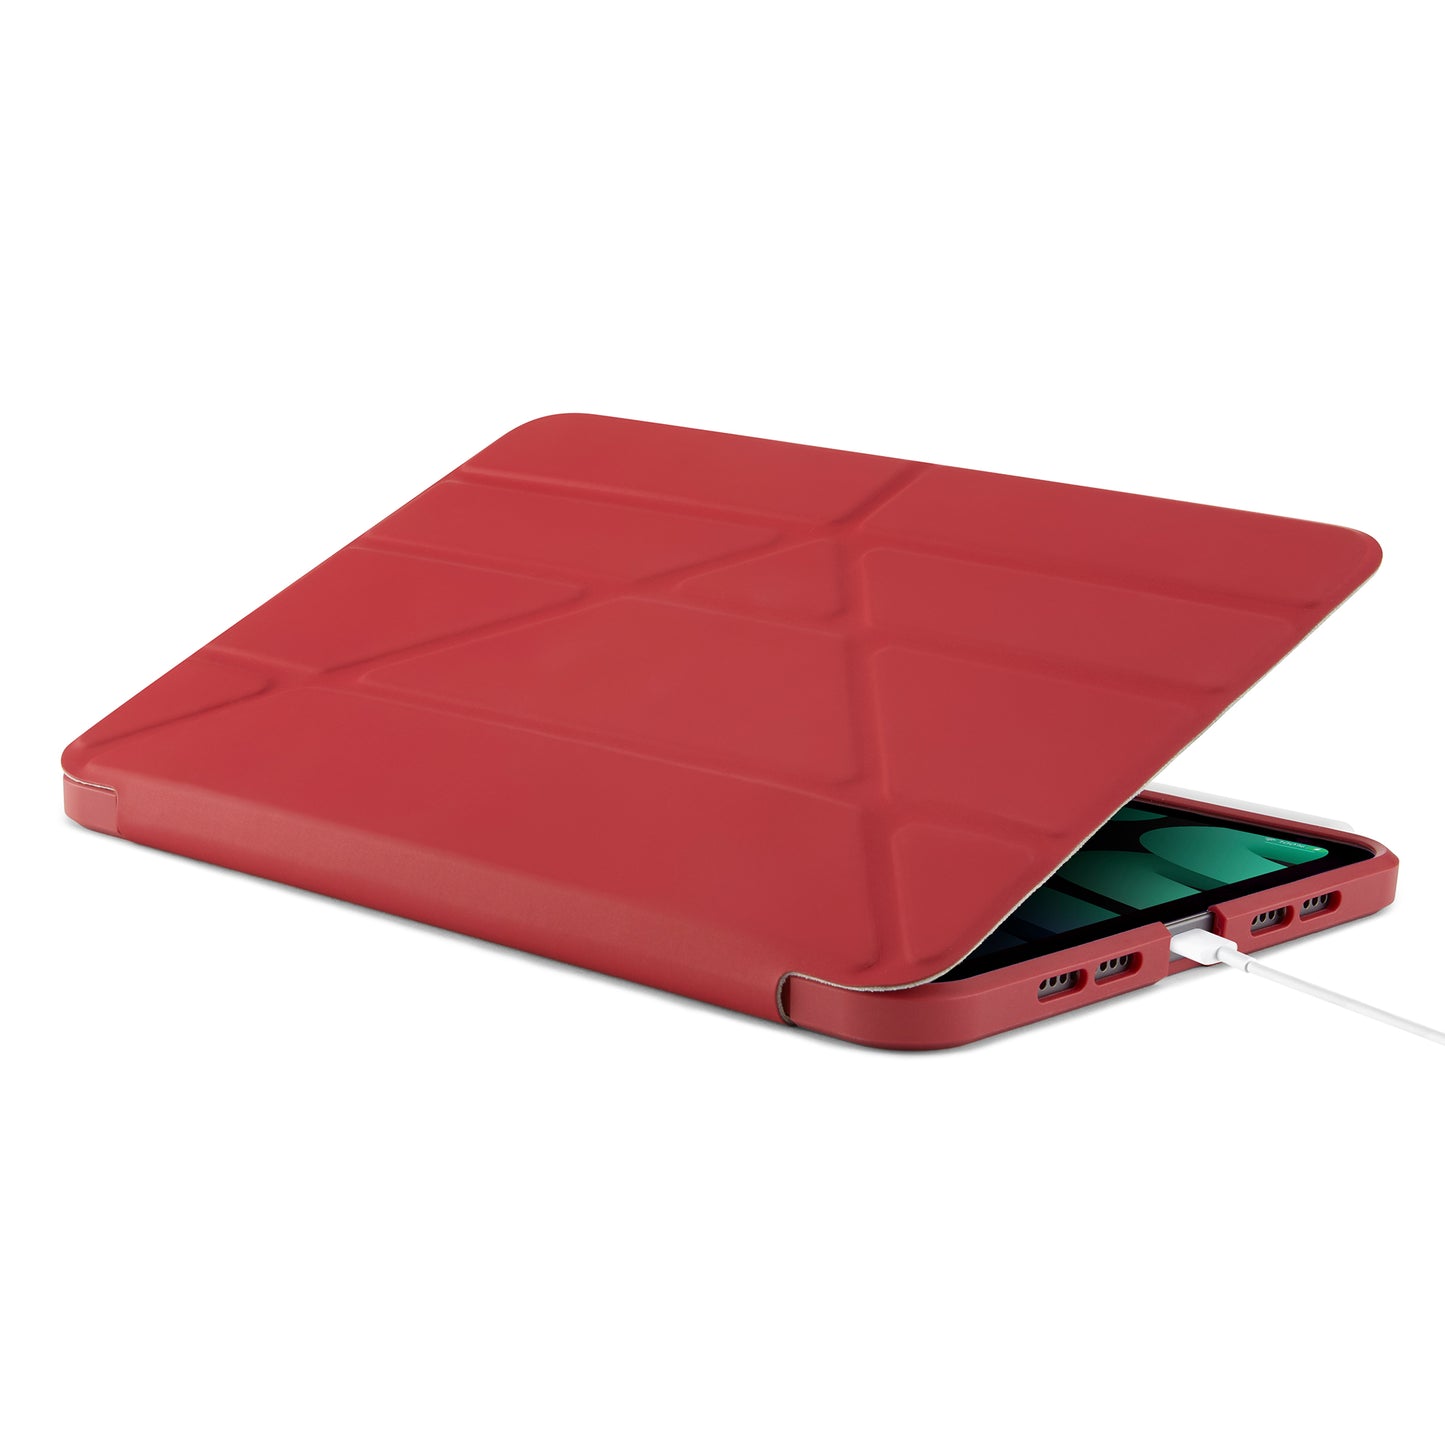 PIPETTO Origami No.1 Case for iPad Mini 6th Gen (2021) - Dark Red